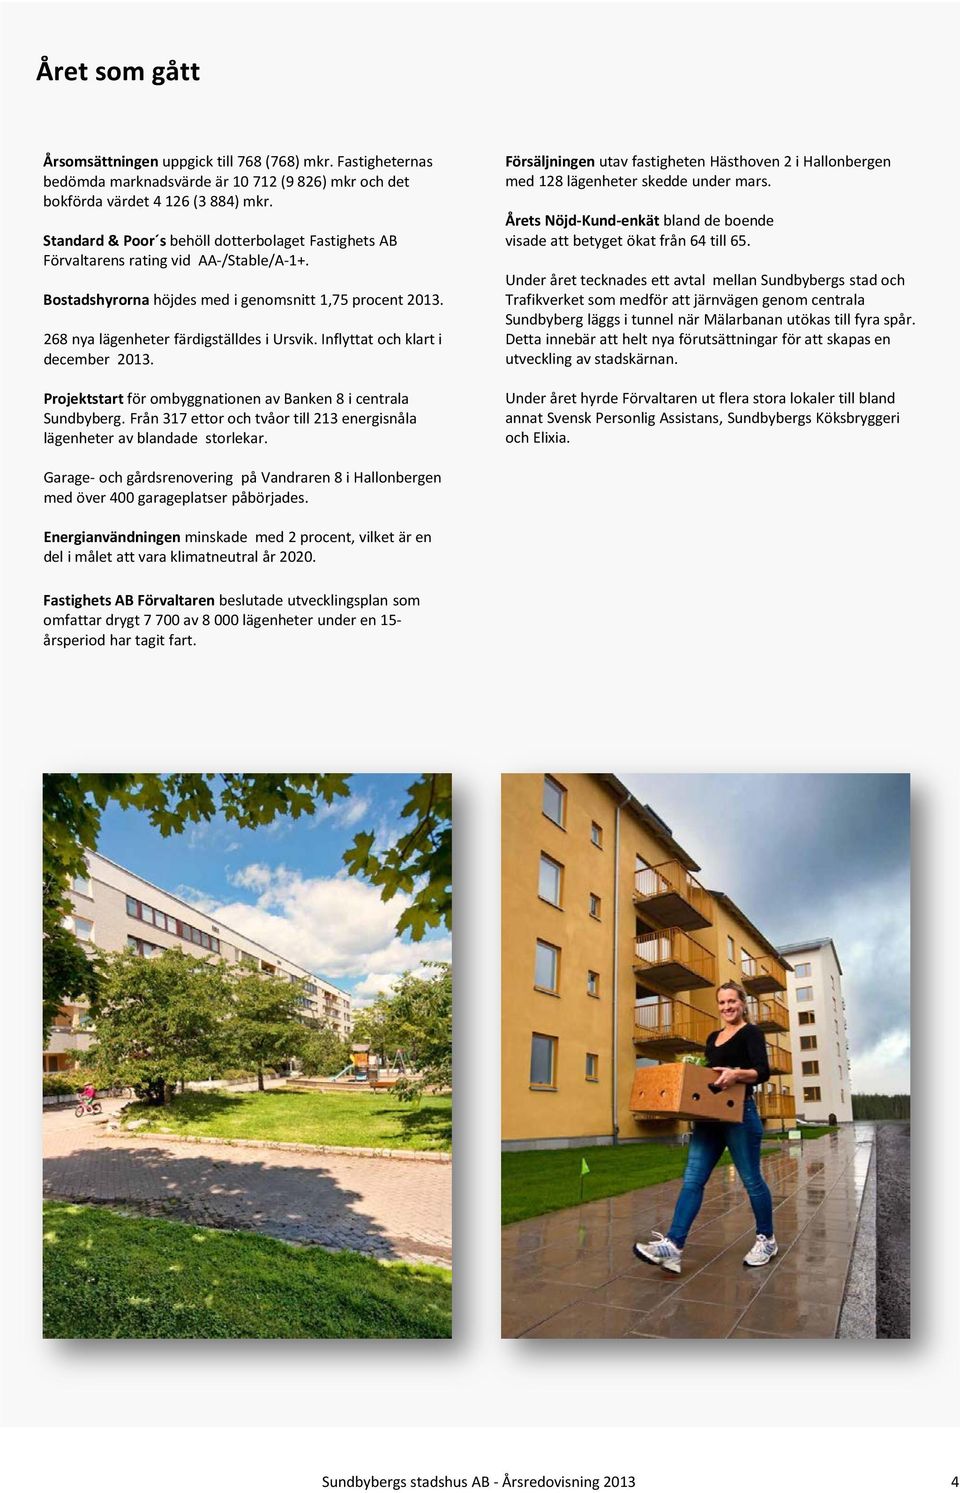 Inflyttat och klart i december 2013. Projektstart för ombyggnationen av Banken 8 i centrala Sundbyberg. Från 317 ettor och tvåor till 213 energisnåla lägenheter av blandade storlekar.